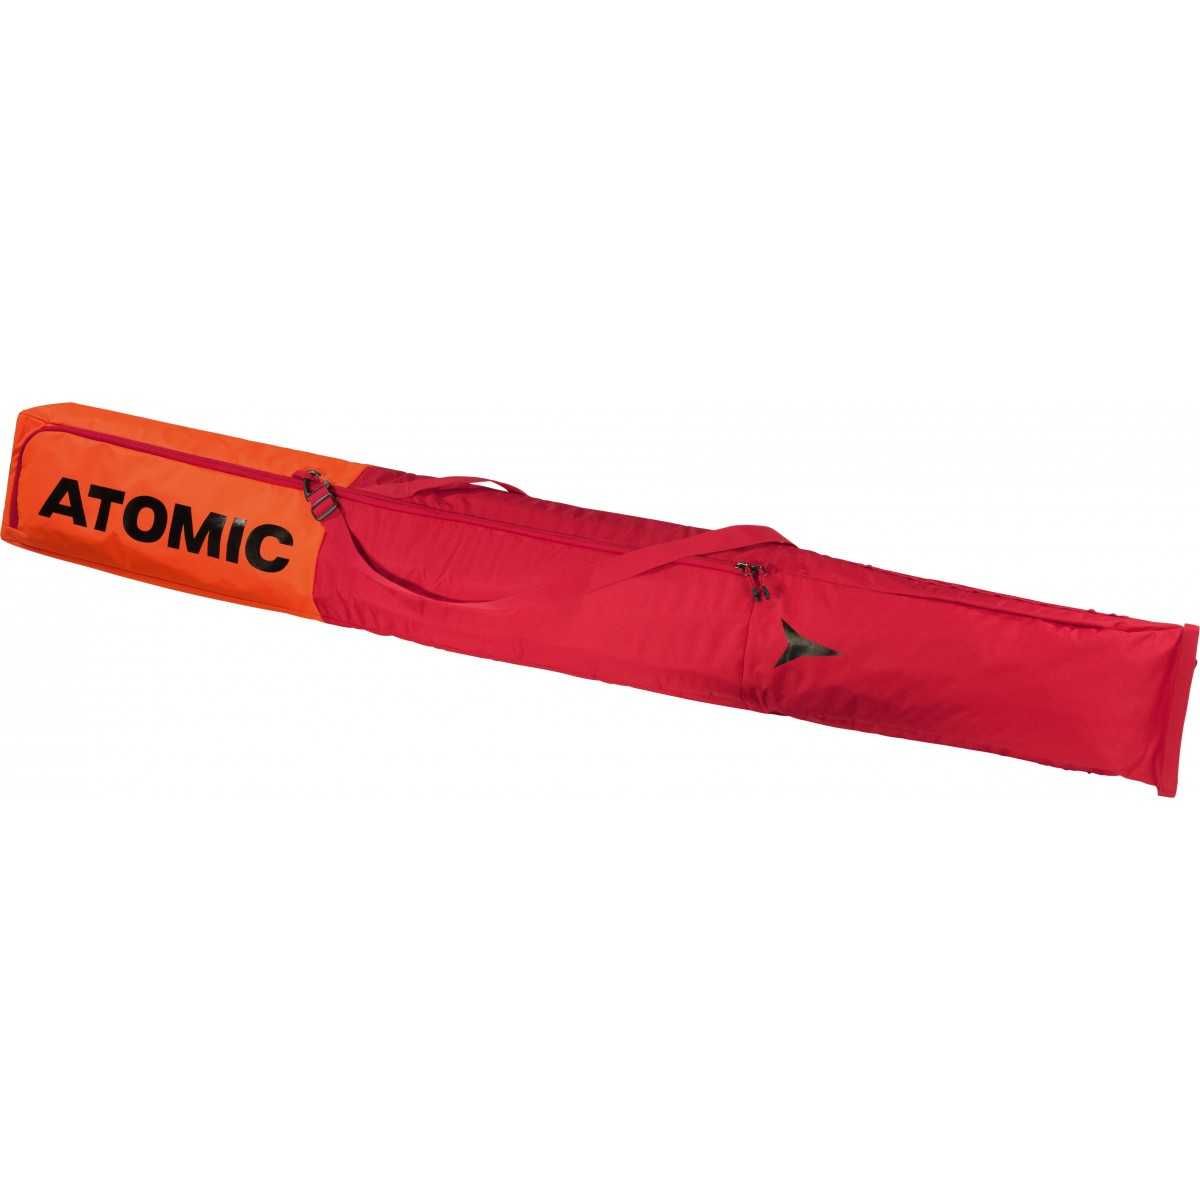 ATOMIC SKI BAG rouge 205cm 